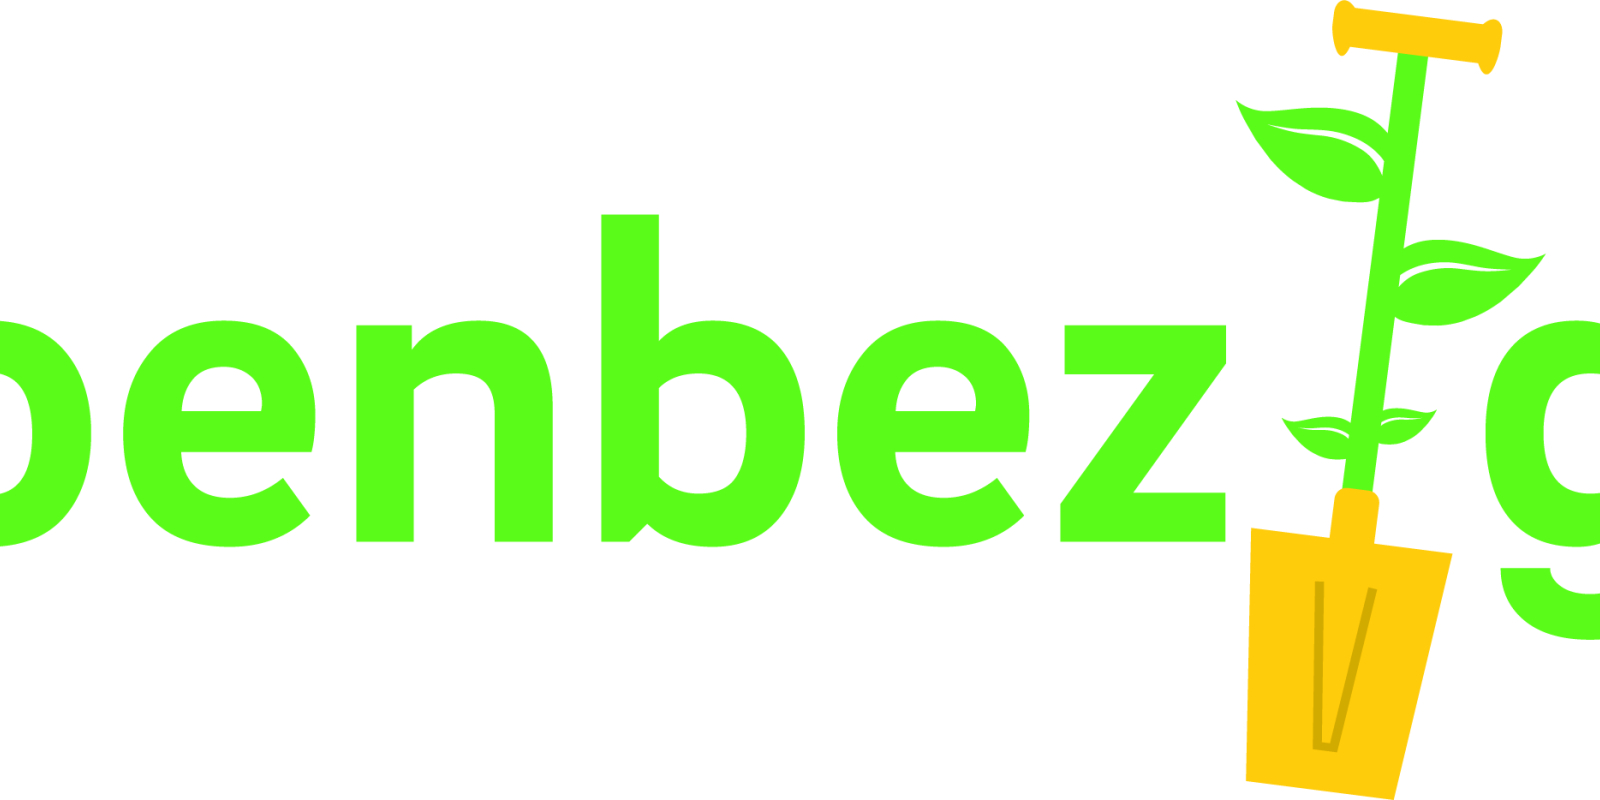 groenbezig-logo